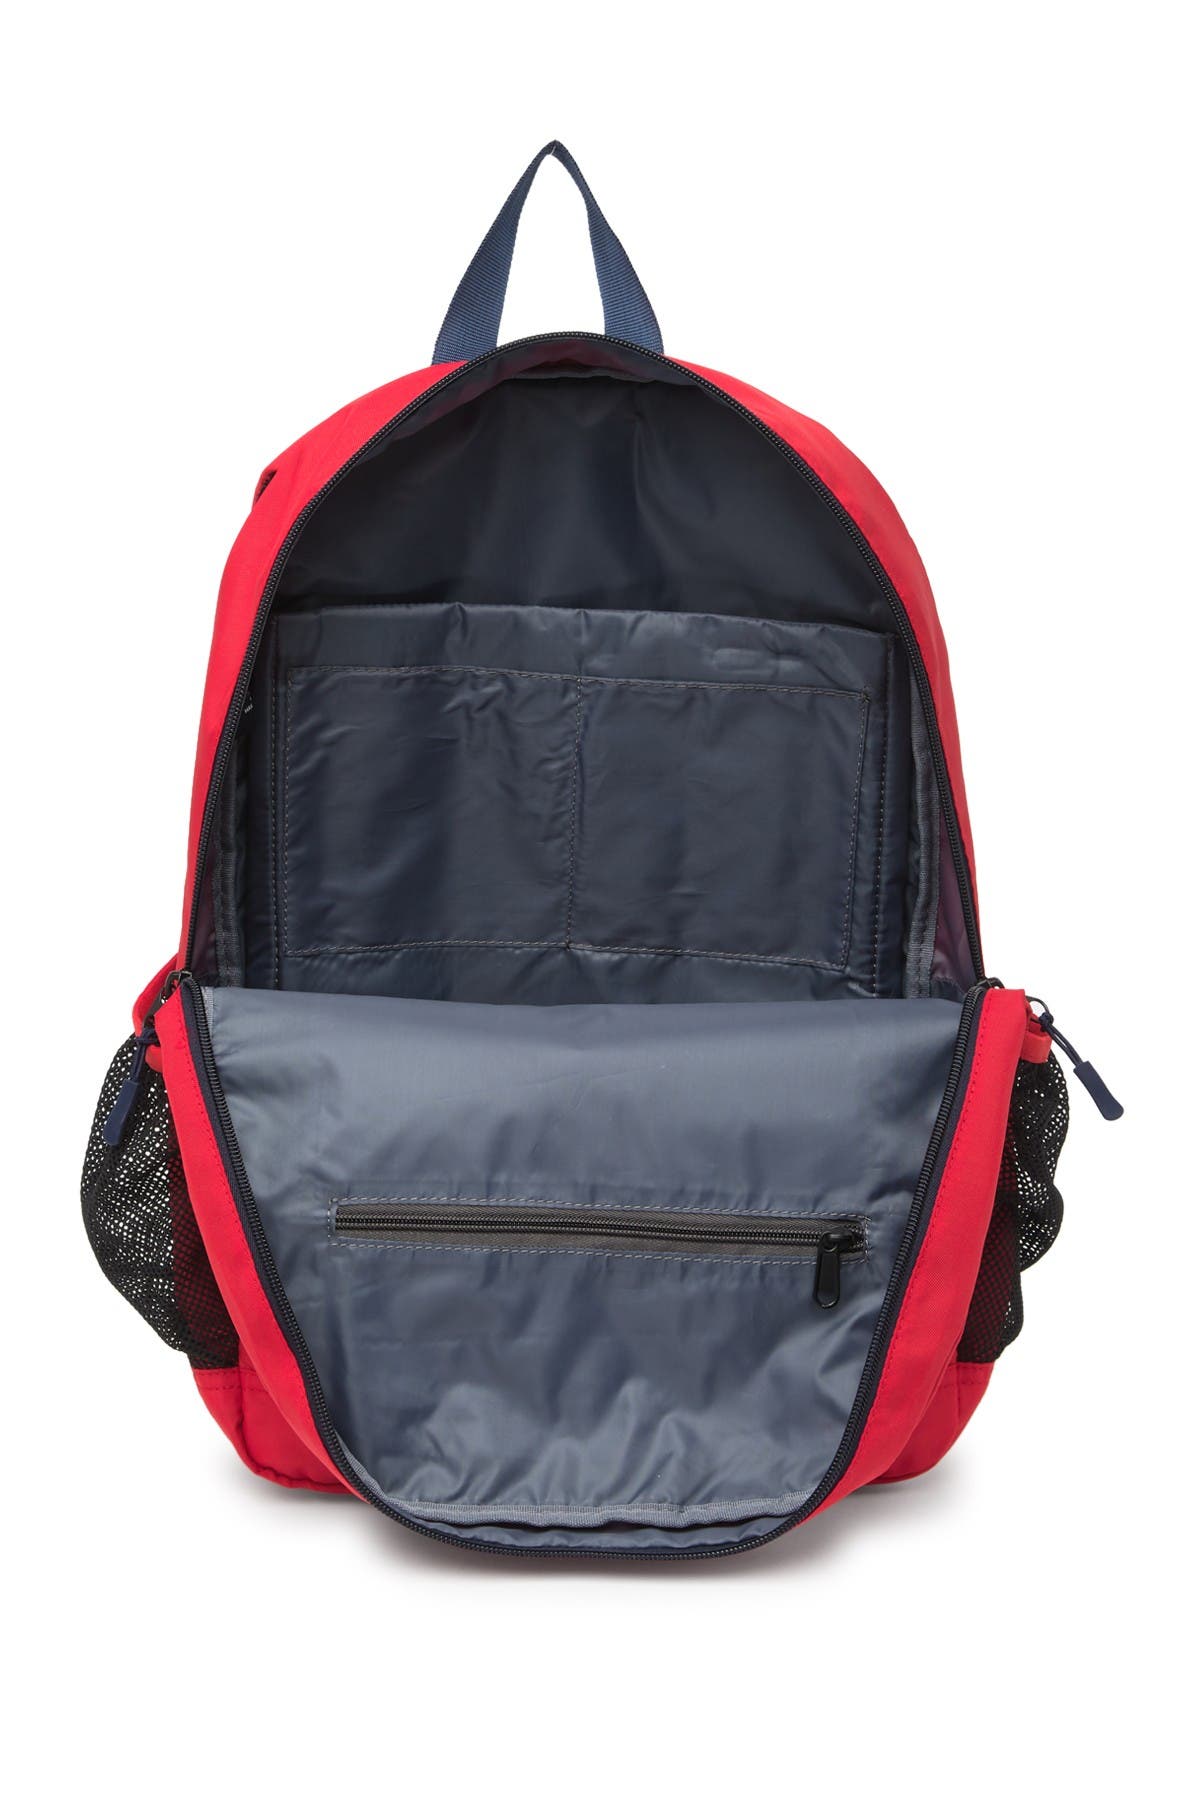 Nautica N1983 Tonal Backpack In 05-red